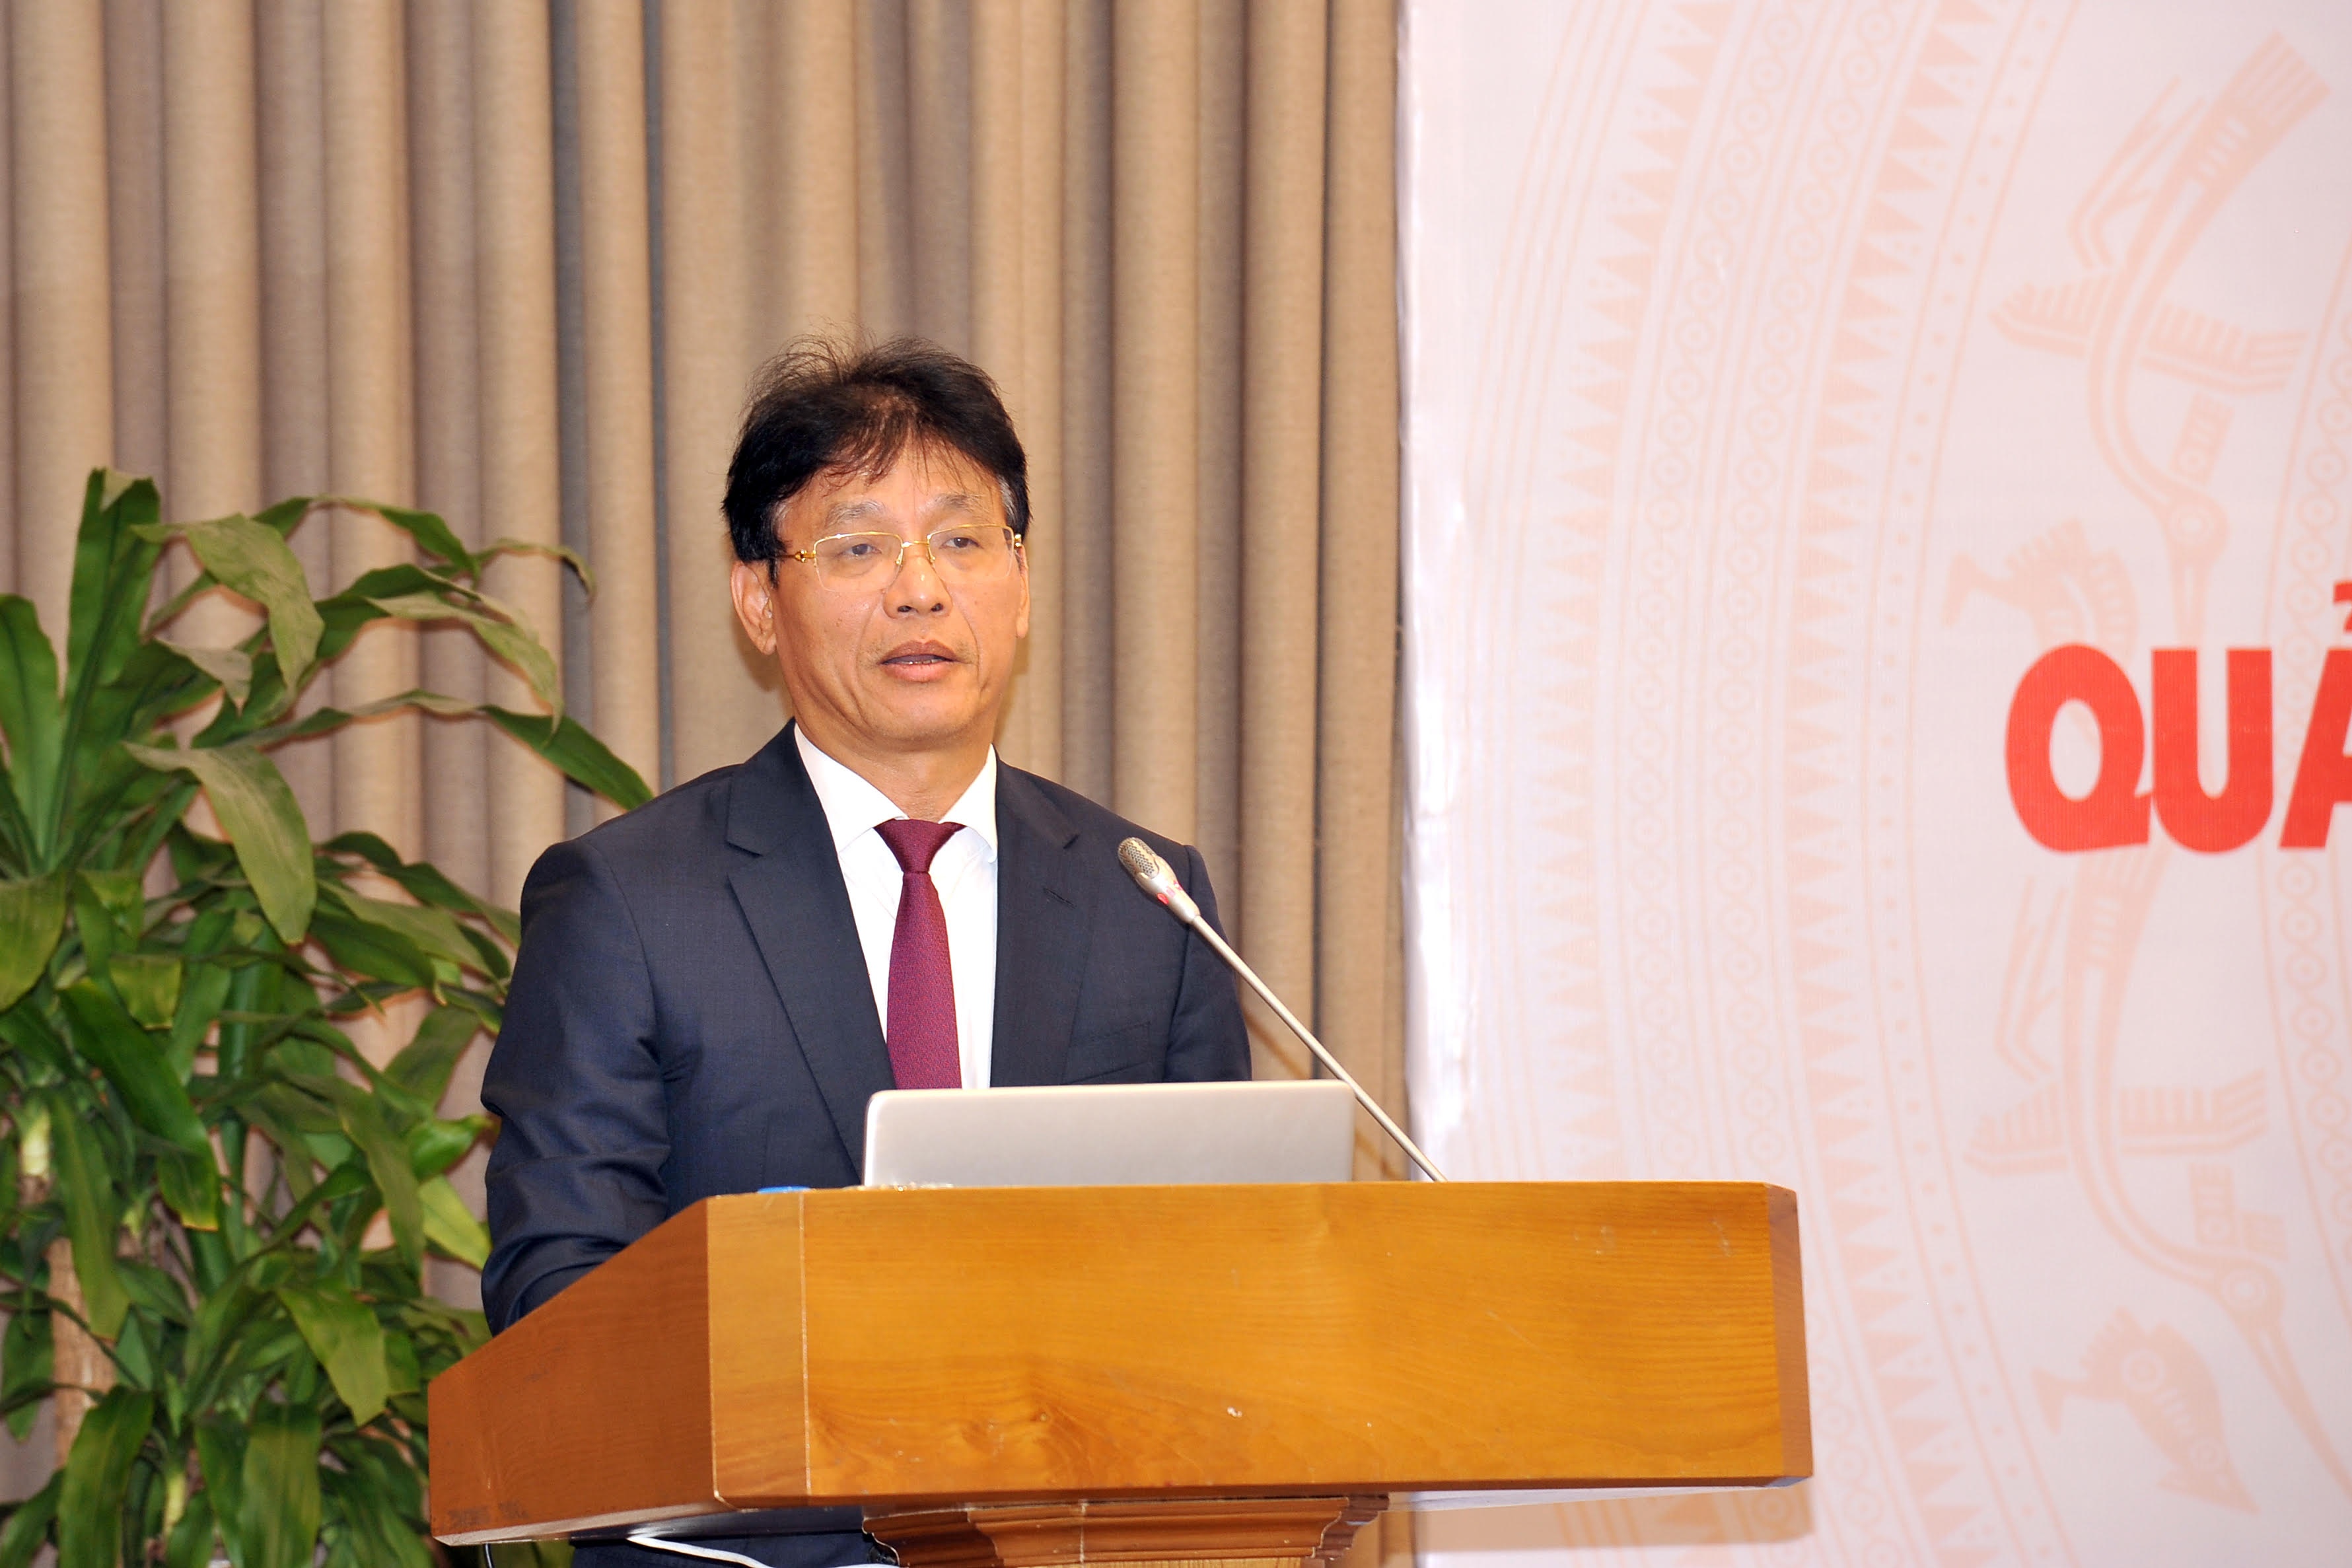 ông Đặng Ngọc Minh, Phó Tổng cục trưởng Tổng cục Thuế phát biểu tại Hội thảo